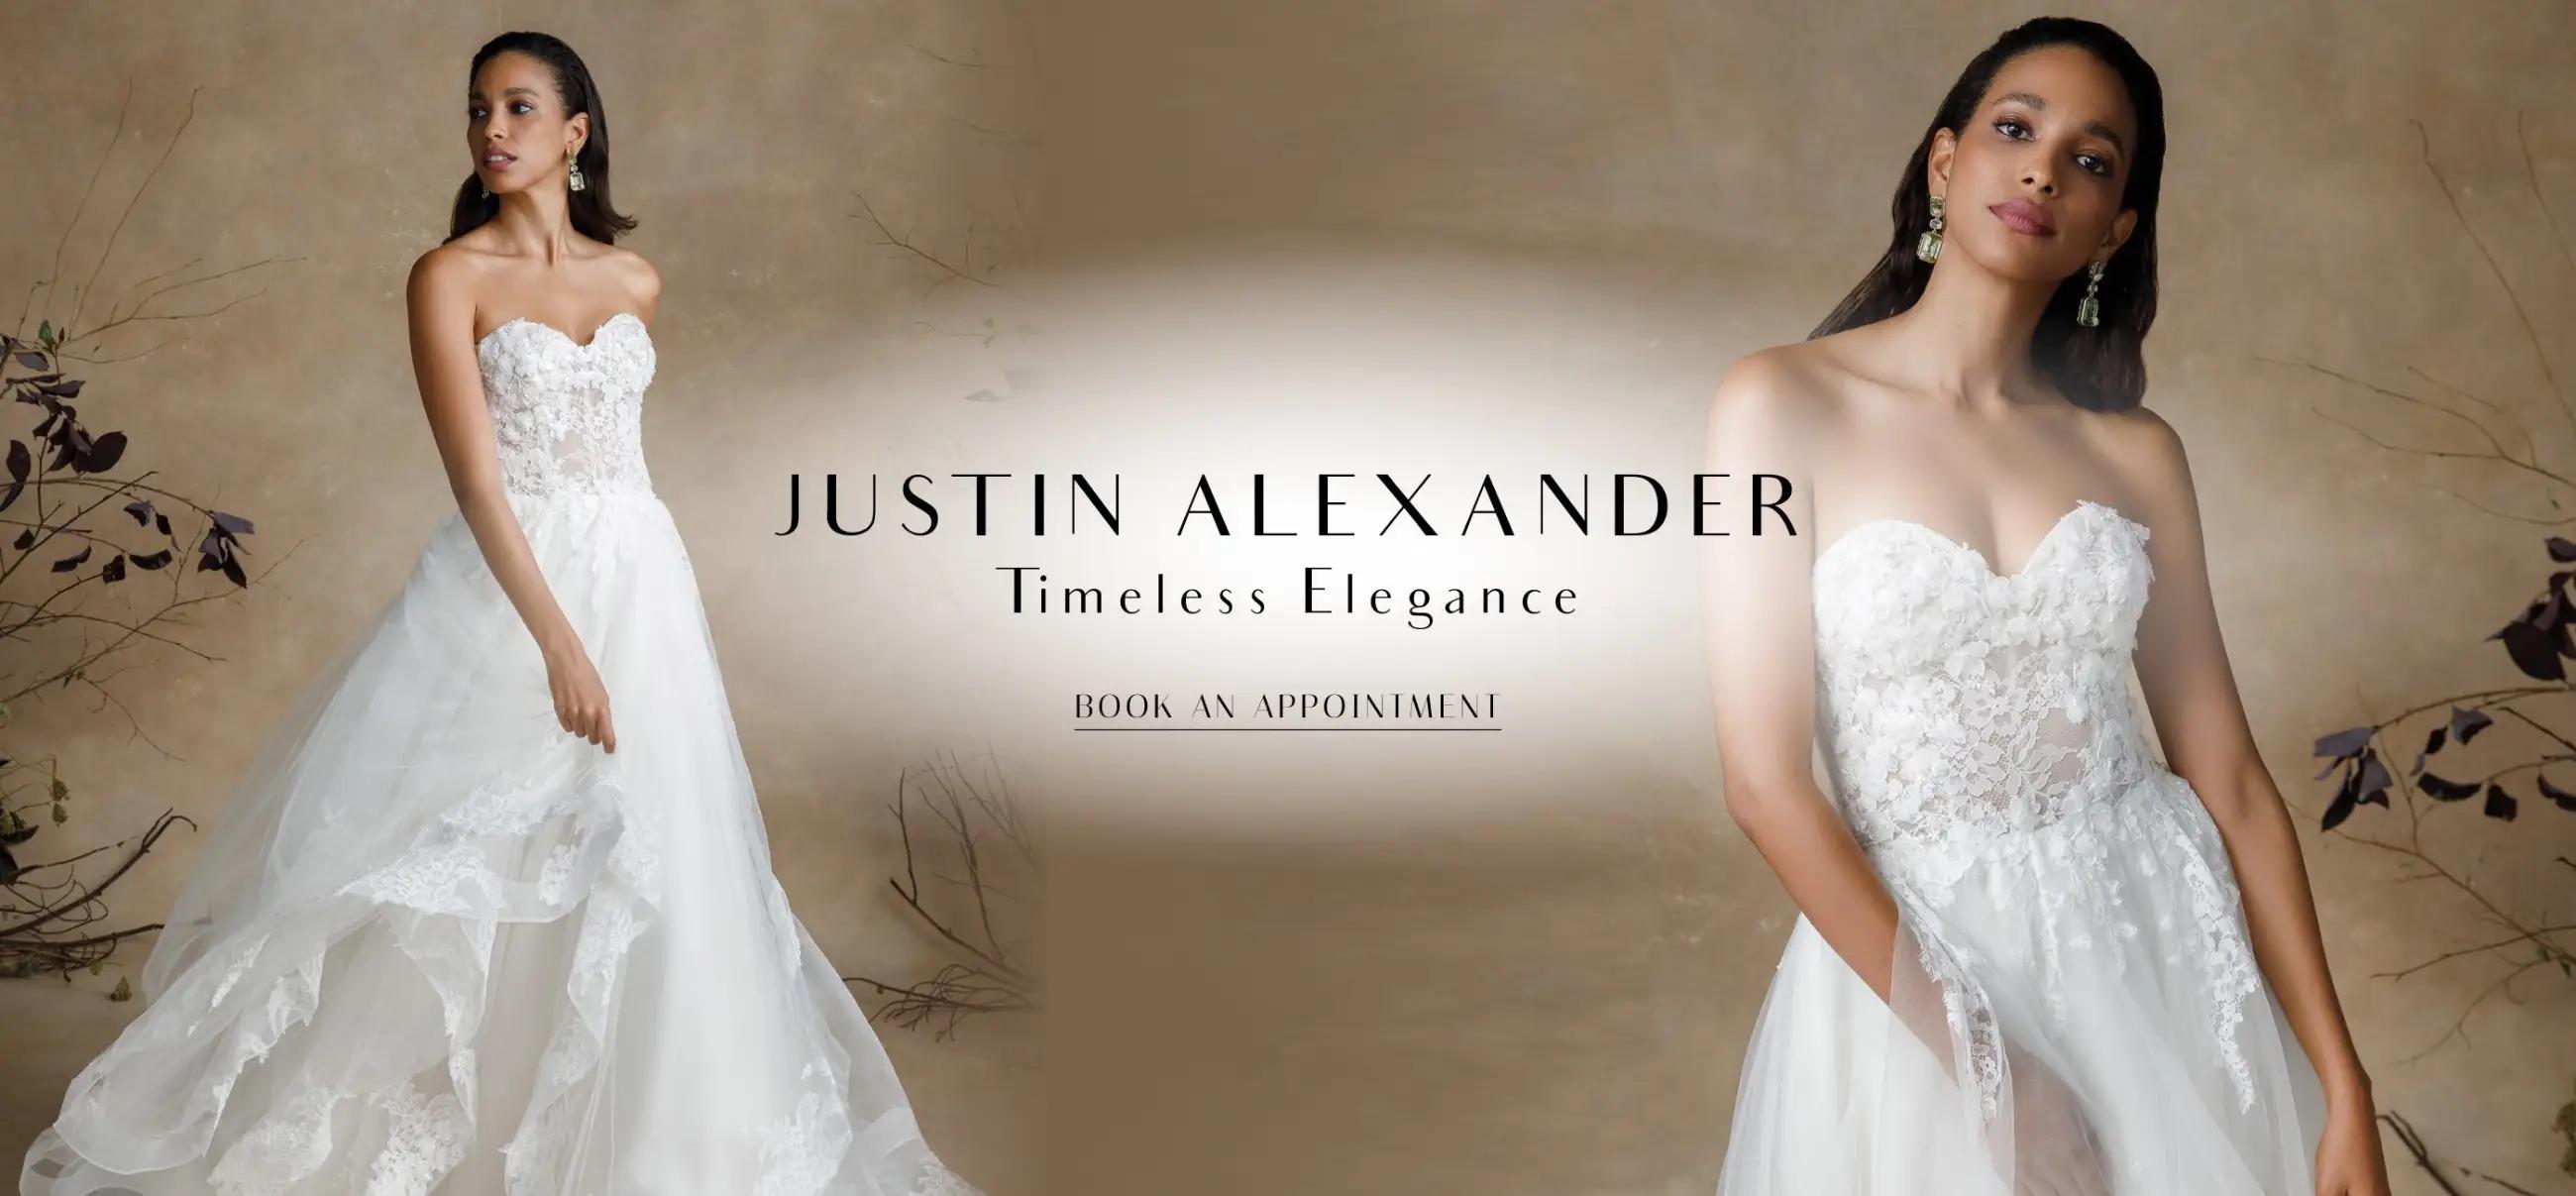 Desktop banner promoting Justin Alexander dresses